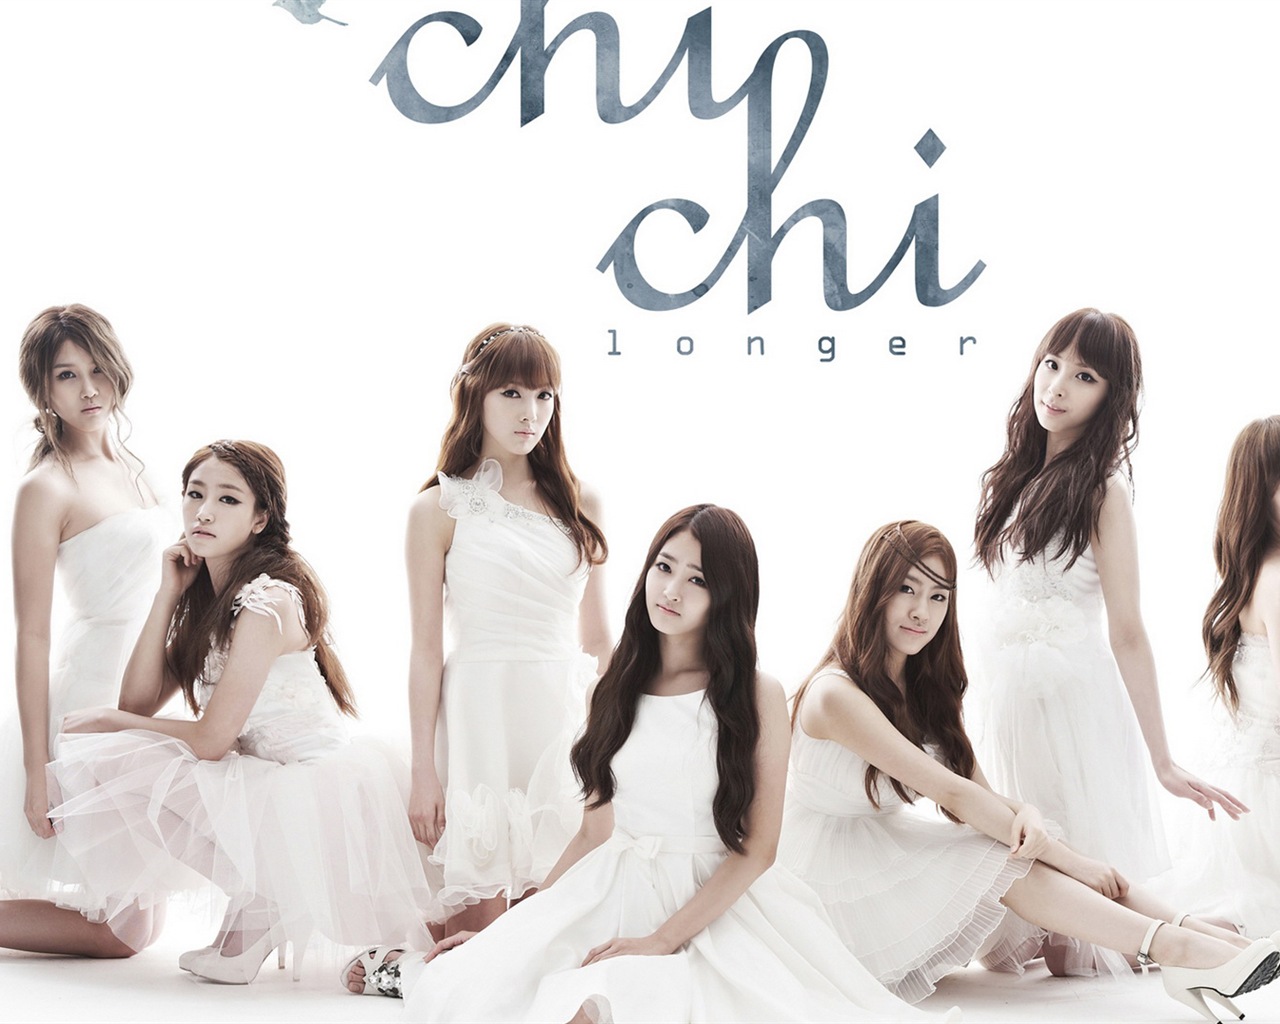 CHI CHI 韓國音樂女子組合 高清壁紙 #1 - 1280x1024